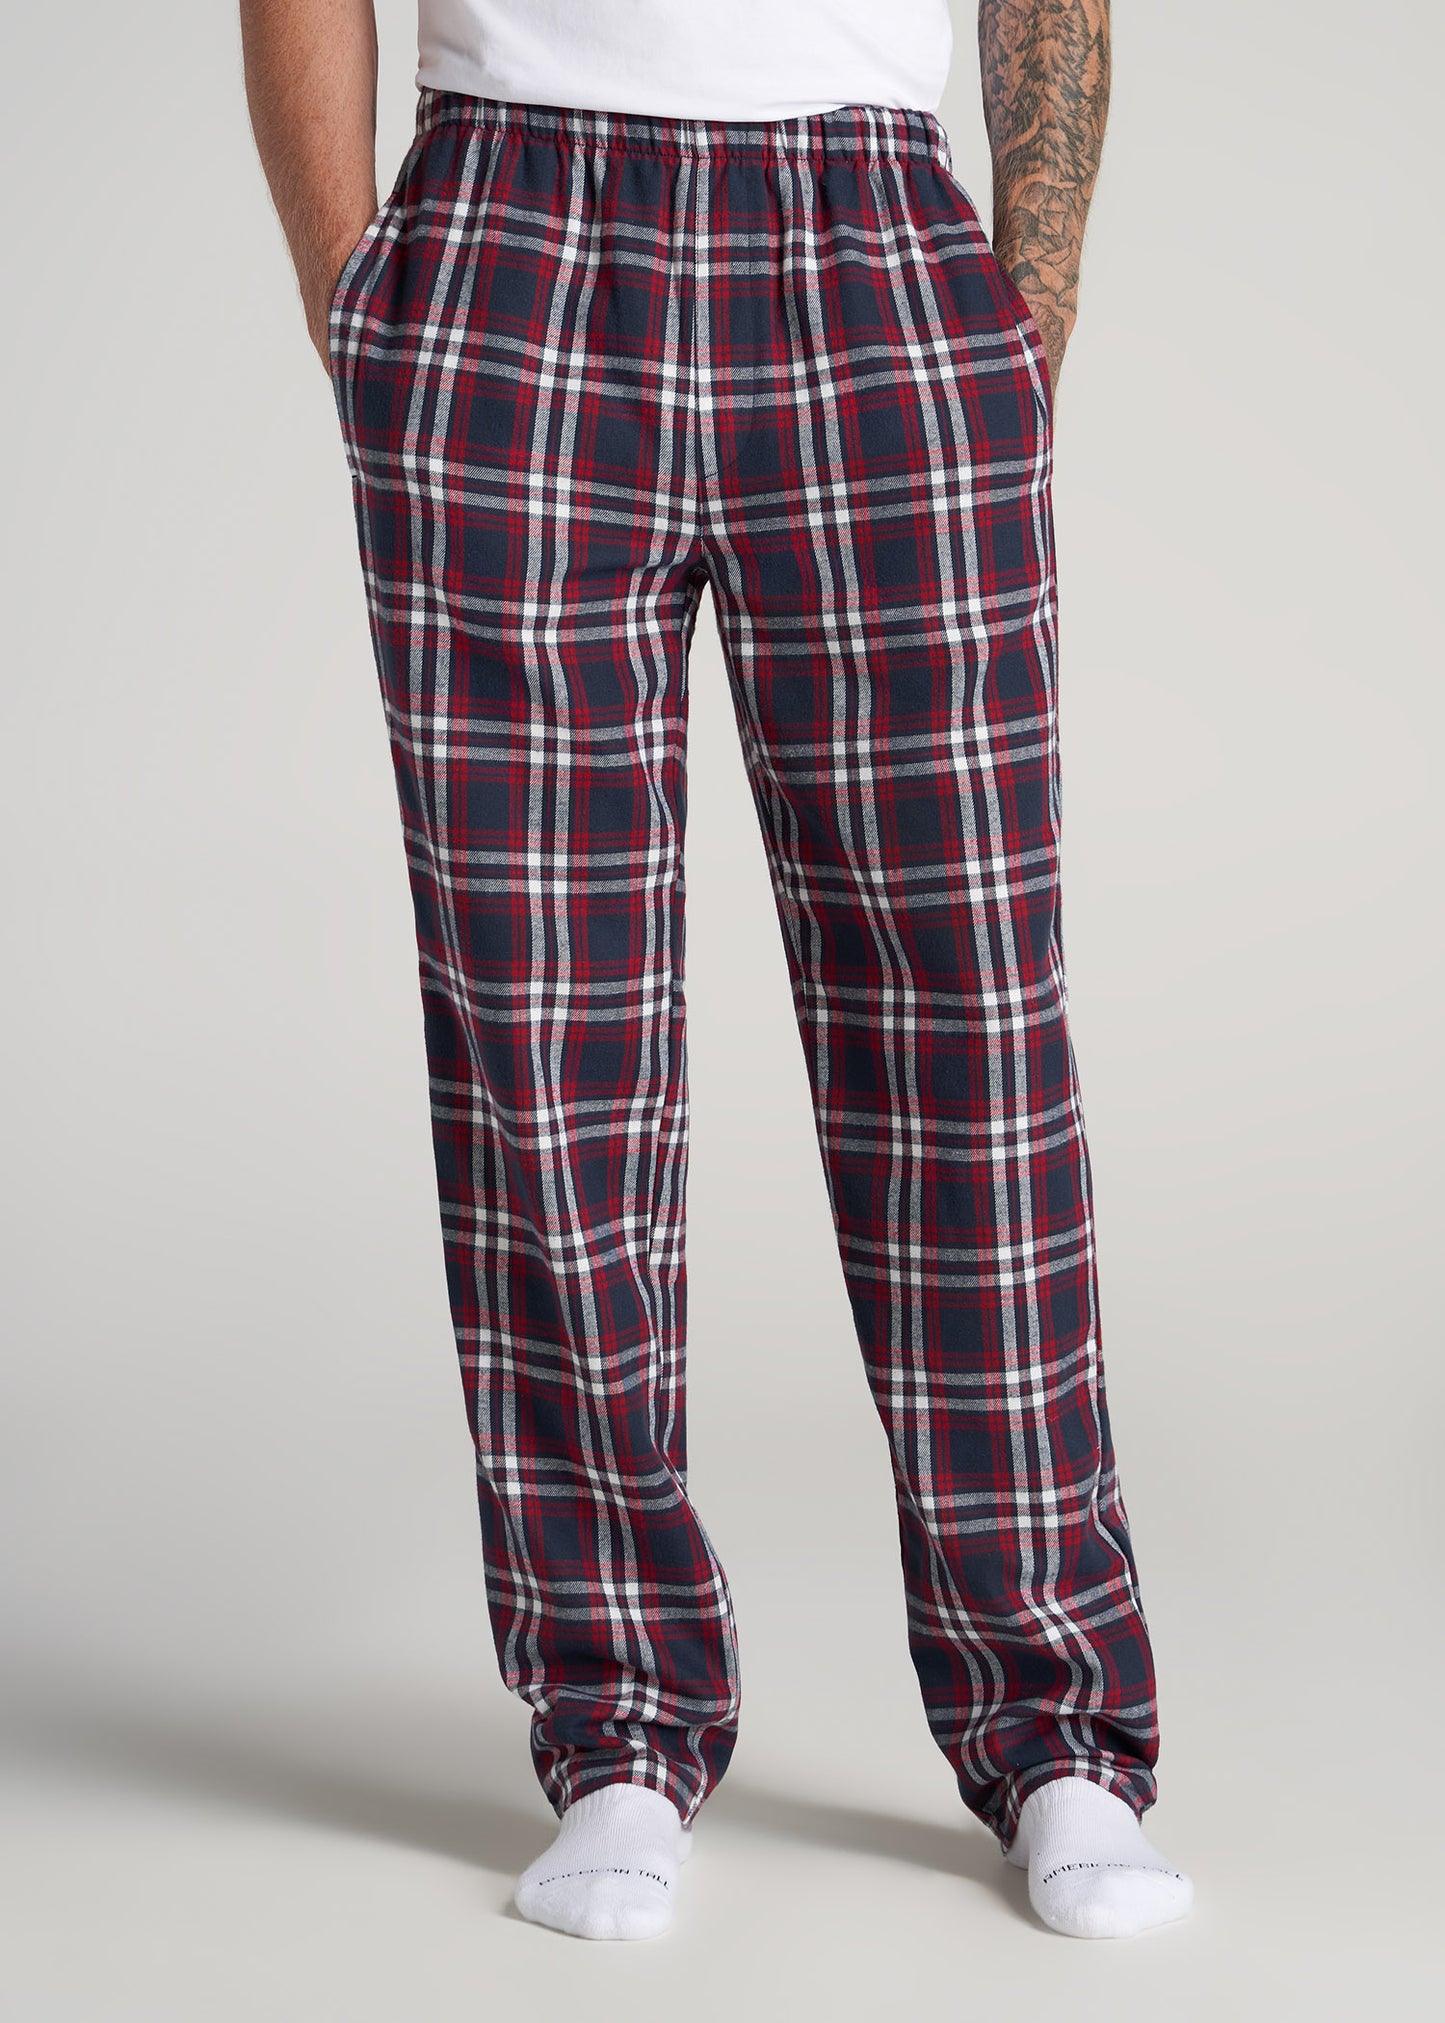 Mens Pajama Bottoms Plaid Tartan Lumberjack Thanksgiving Pumpkins Pajama  Pants for Men Lounge Pants S at  Men's Clothing store